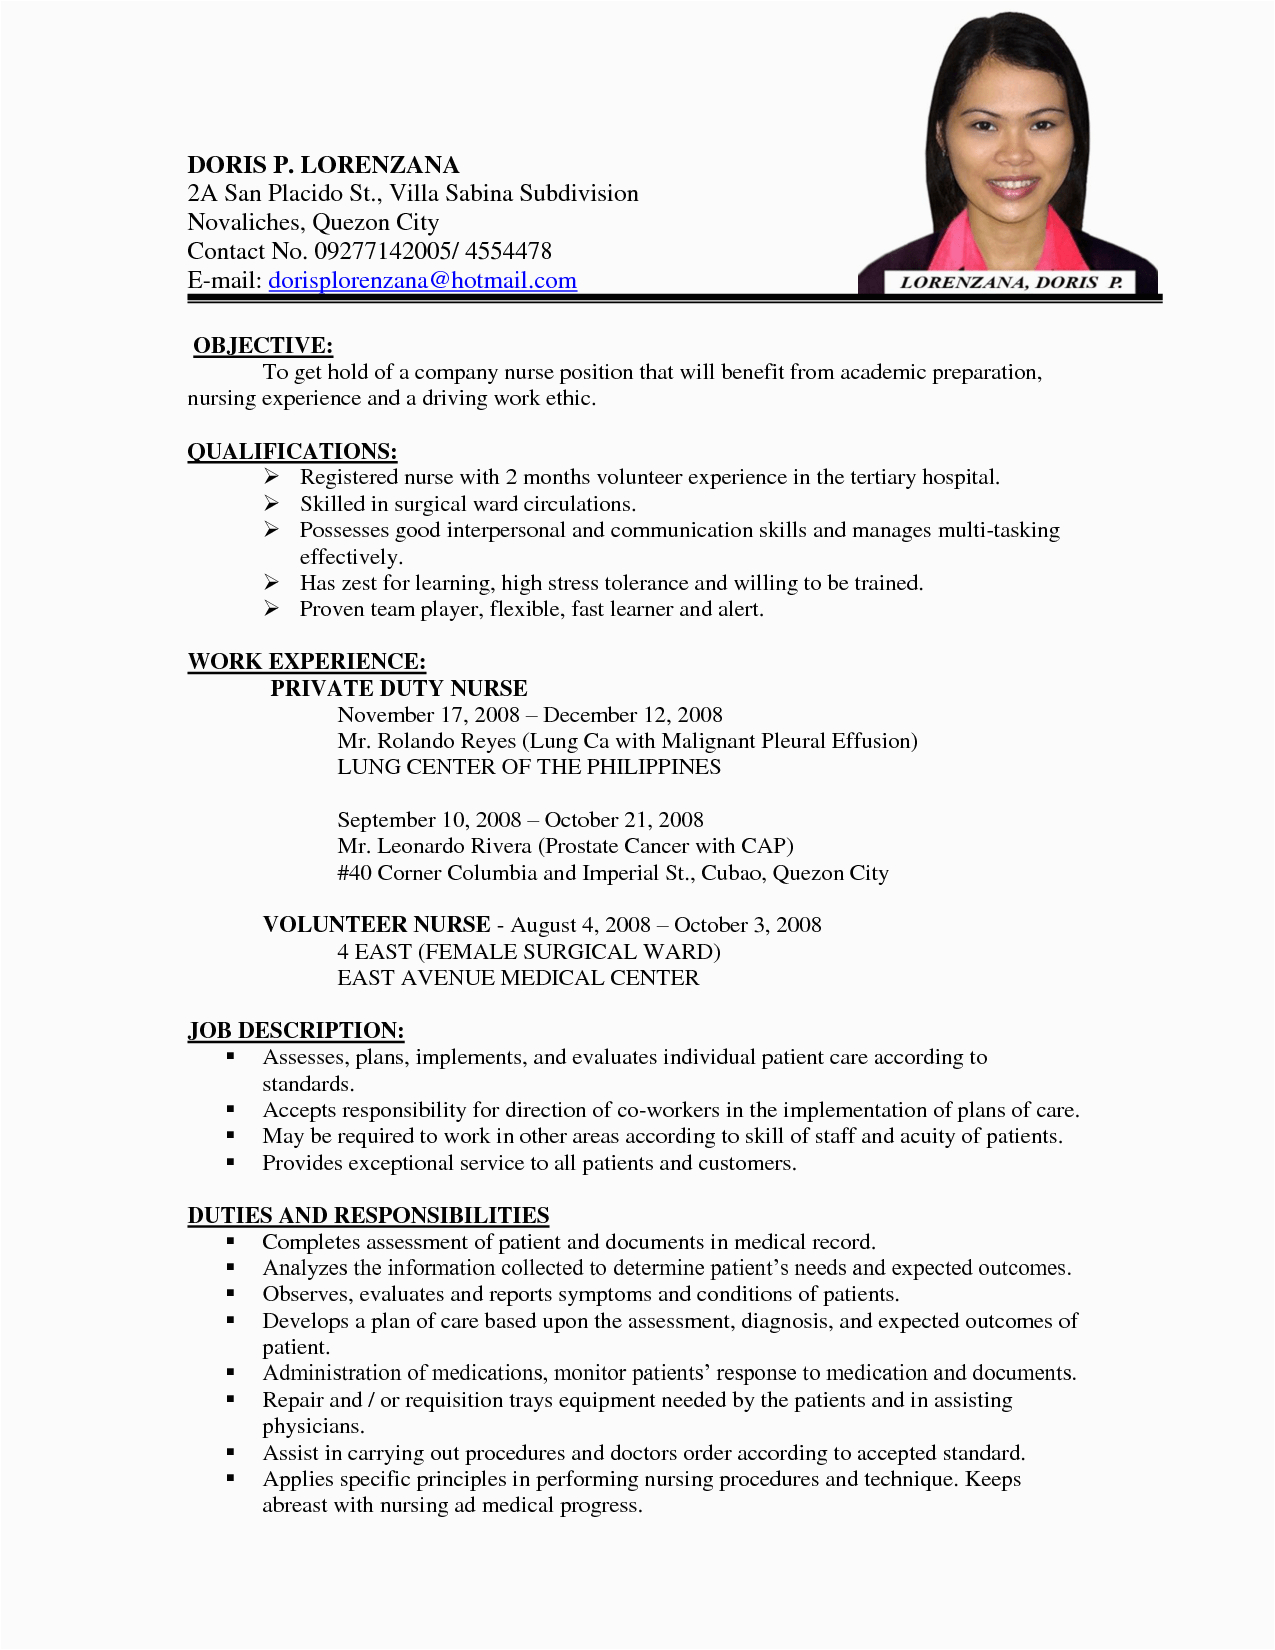 Sample Resume for Elementary Teachers In the Philippines Sample Resume Teachers Elementary Philippines